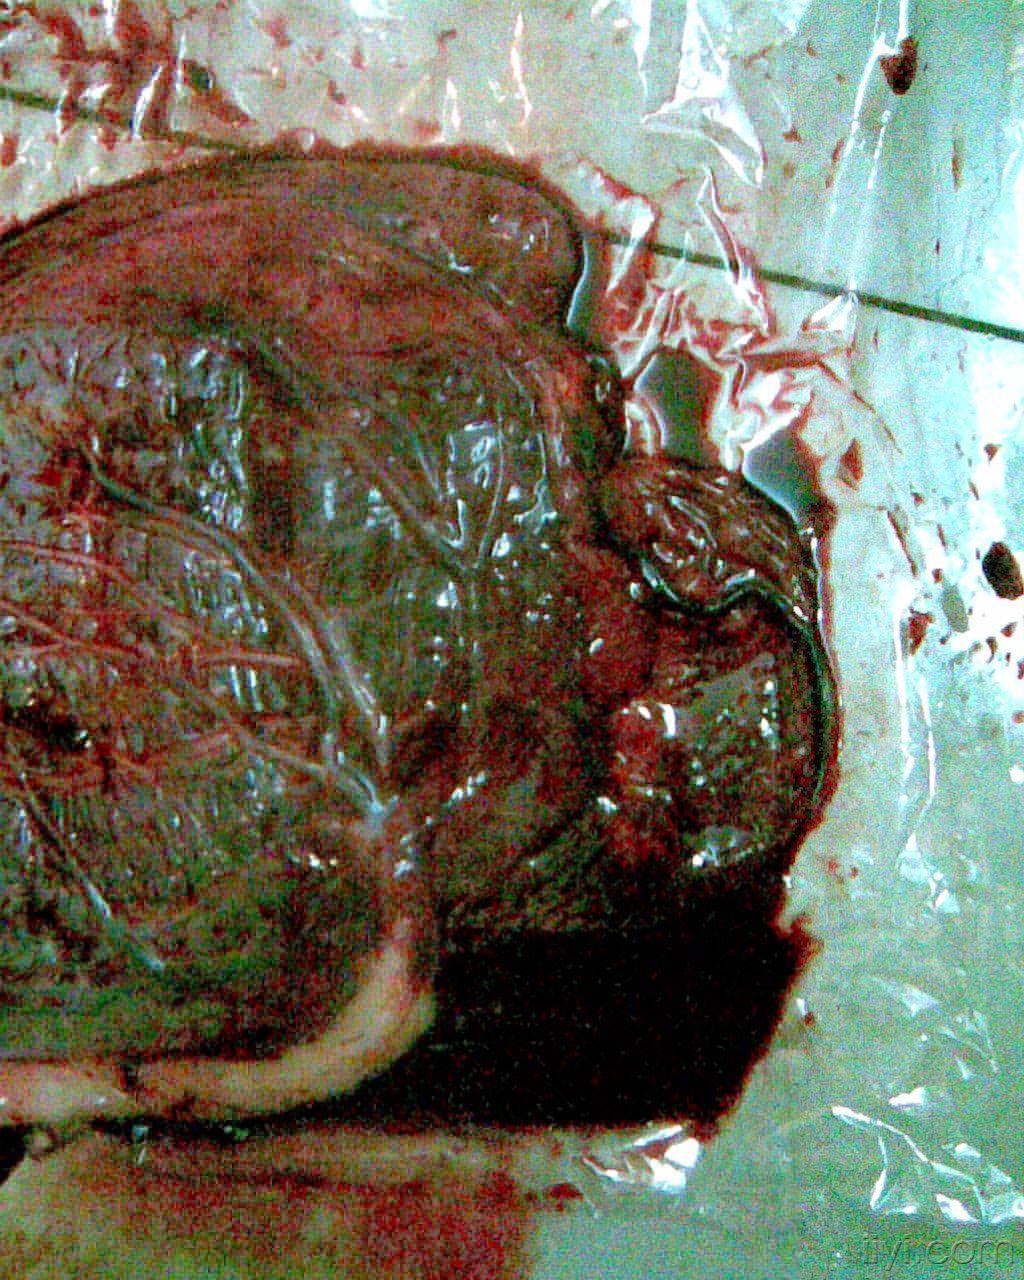 胎盘血肿图片图片